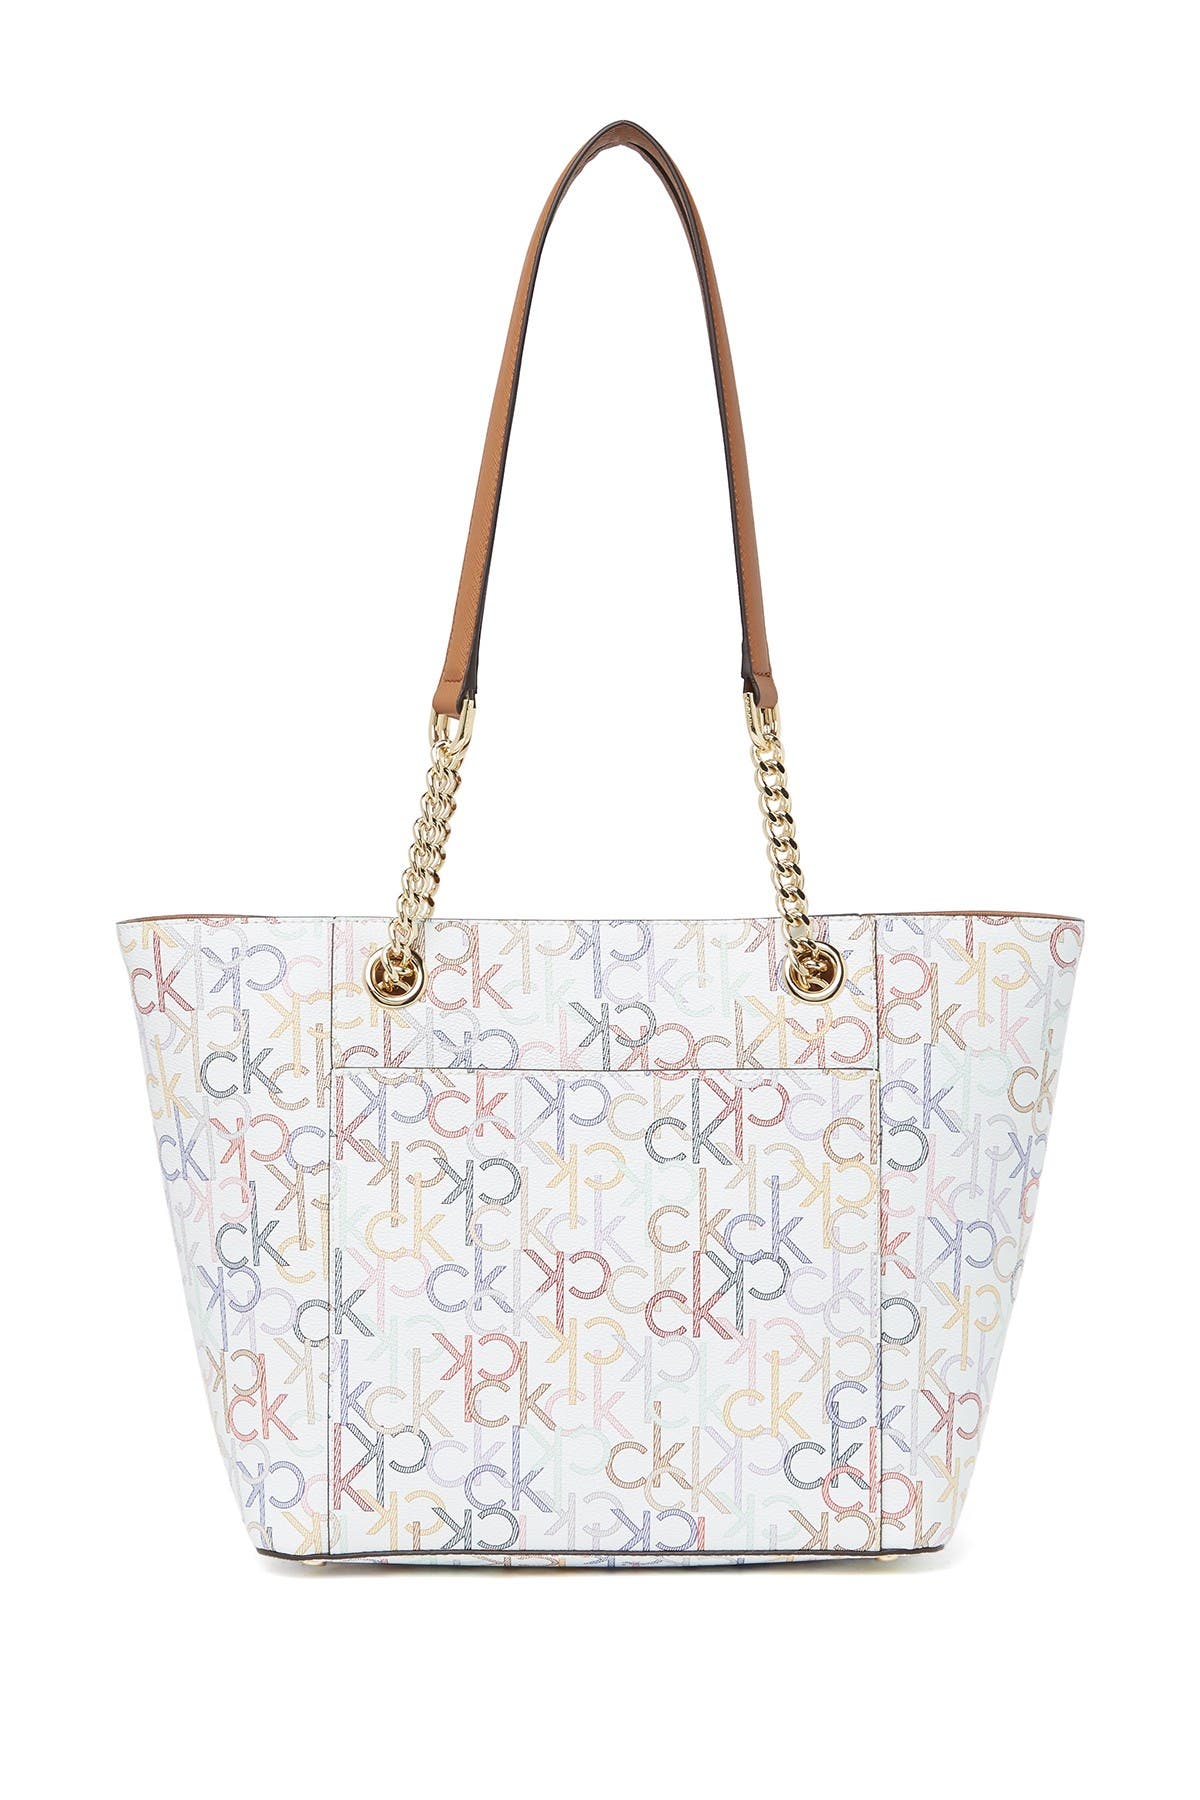 Calvin Klein | Hayden Key Item Monogram Tote Bag | Nordstrom Rack